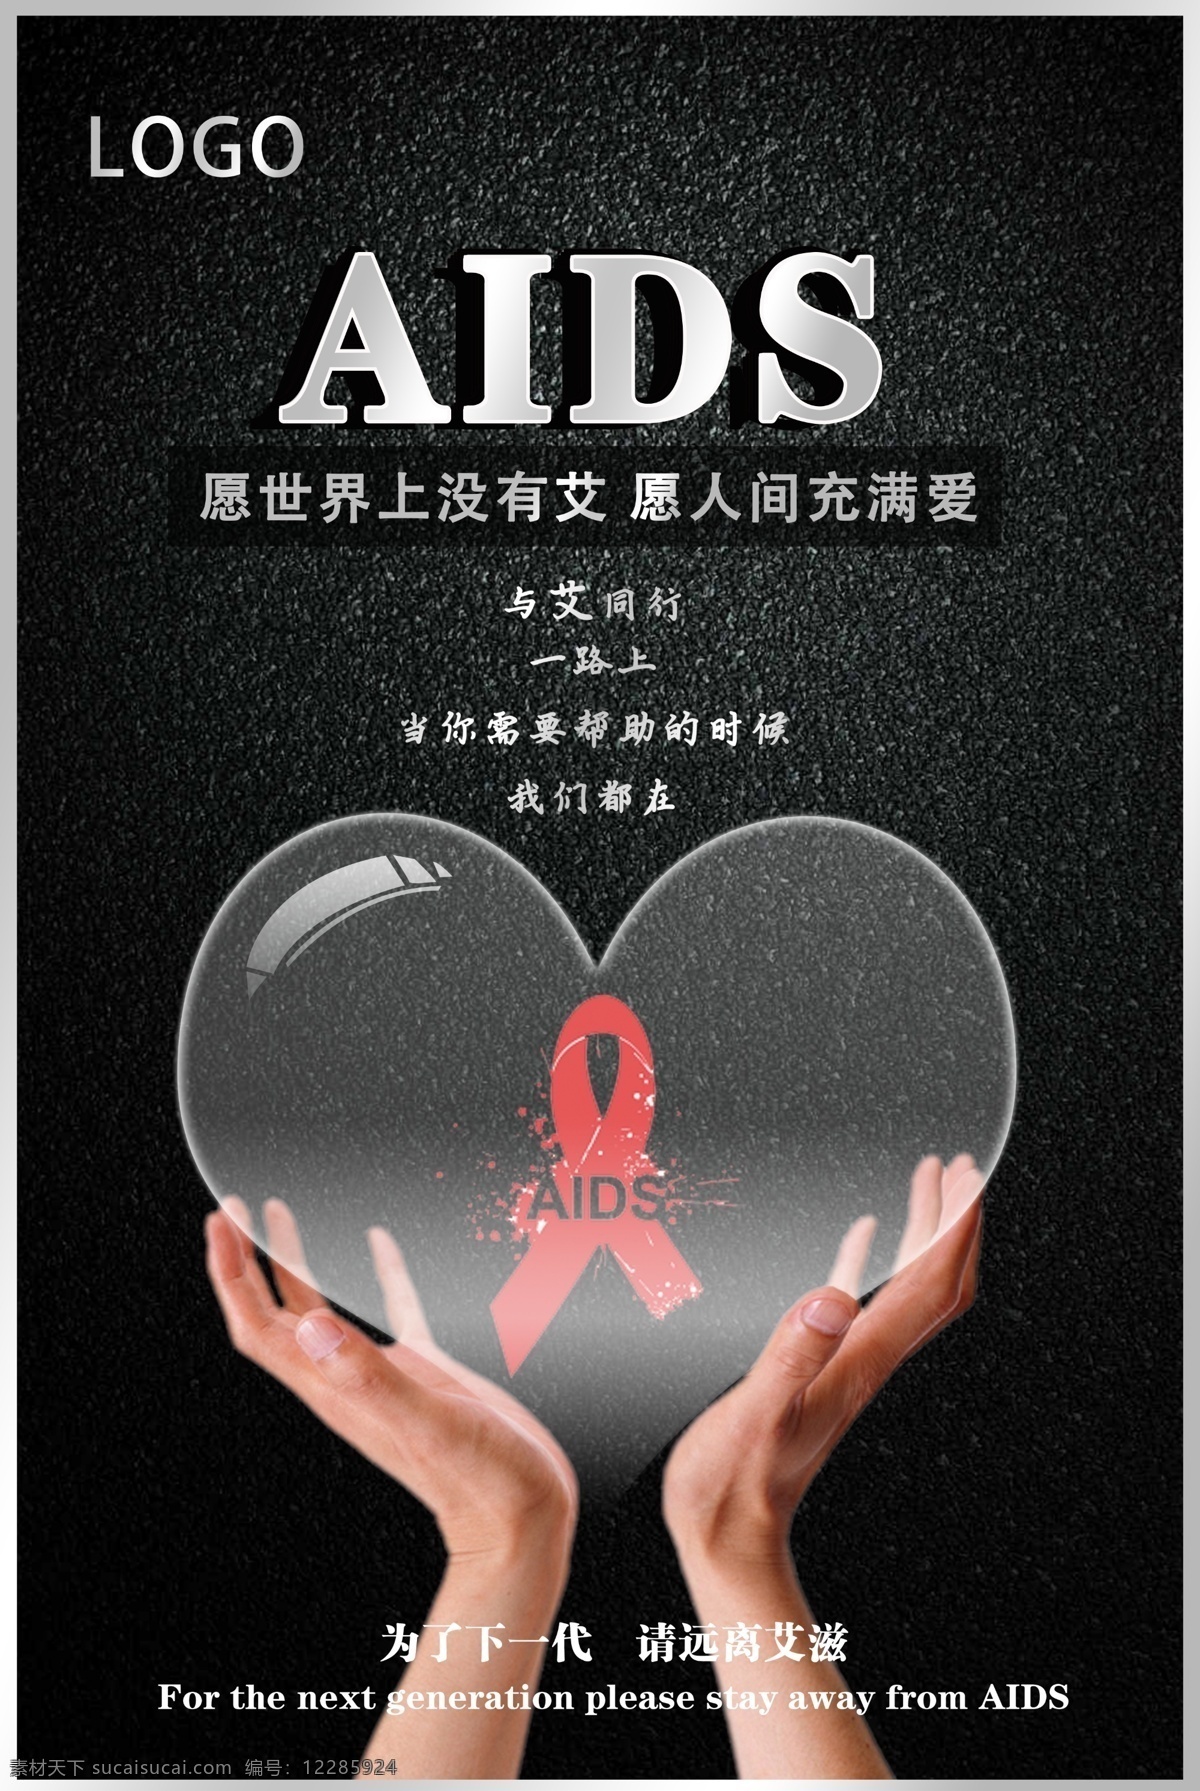 艾滋病海报 预防艾滋 携手抗艾 重在预防 艾滋病 世界艾滋病日 艾滋病广告 青春零艾滋 艾滋病宣传栏 艾滋病知识 艾滋病标志 艾滋 aids 预防艾滋病 艾滋病日 关注艾滋病 艾滋病预防 艾滋病展架 公益广告 爱心 关爱艾滋患者 艾滋病展板 艾滋两性 两性健康